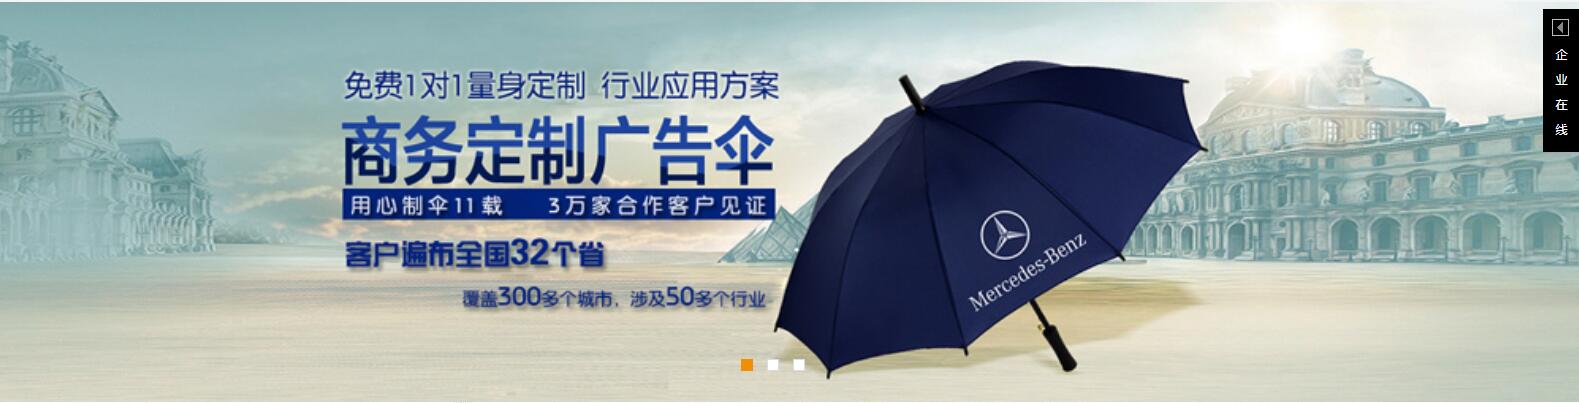 **大雨伞定制、许昌雨伞厂、嘉鸿太阳伞定做报价